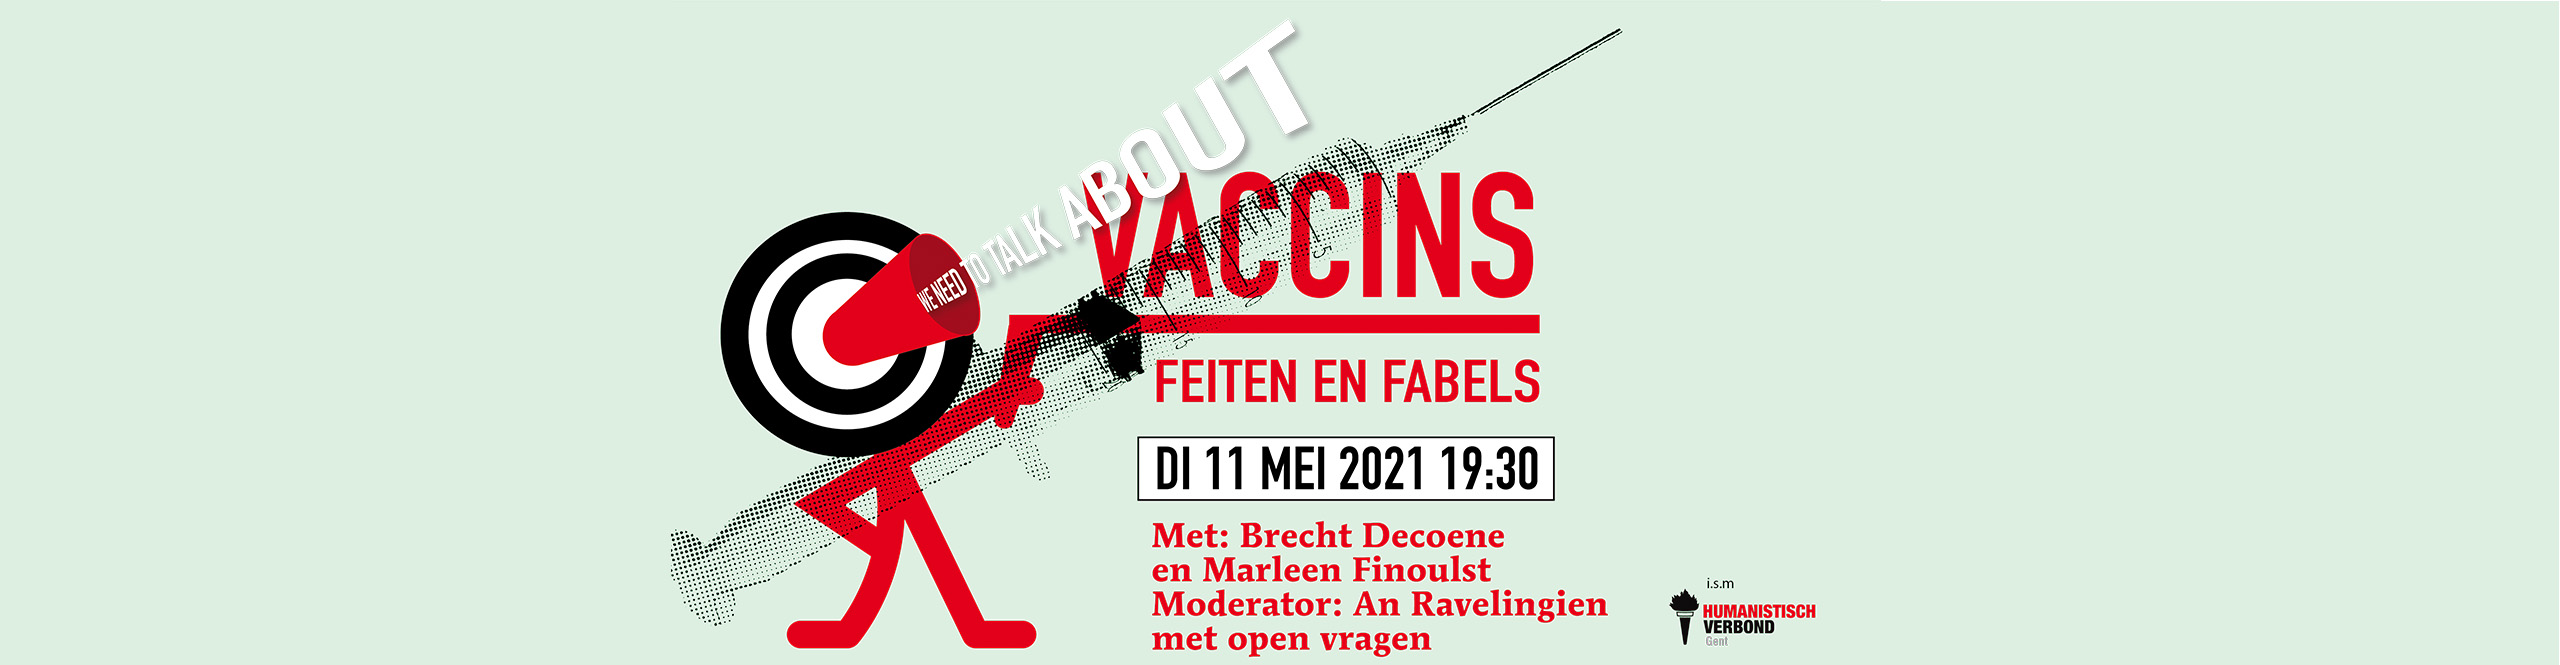 Herbekijk We Need to Talk About: Vaccins. Feiten en fabels.